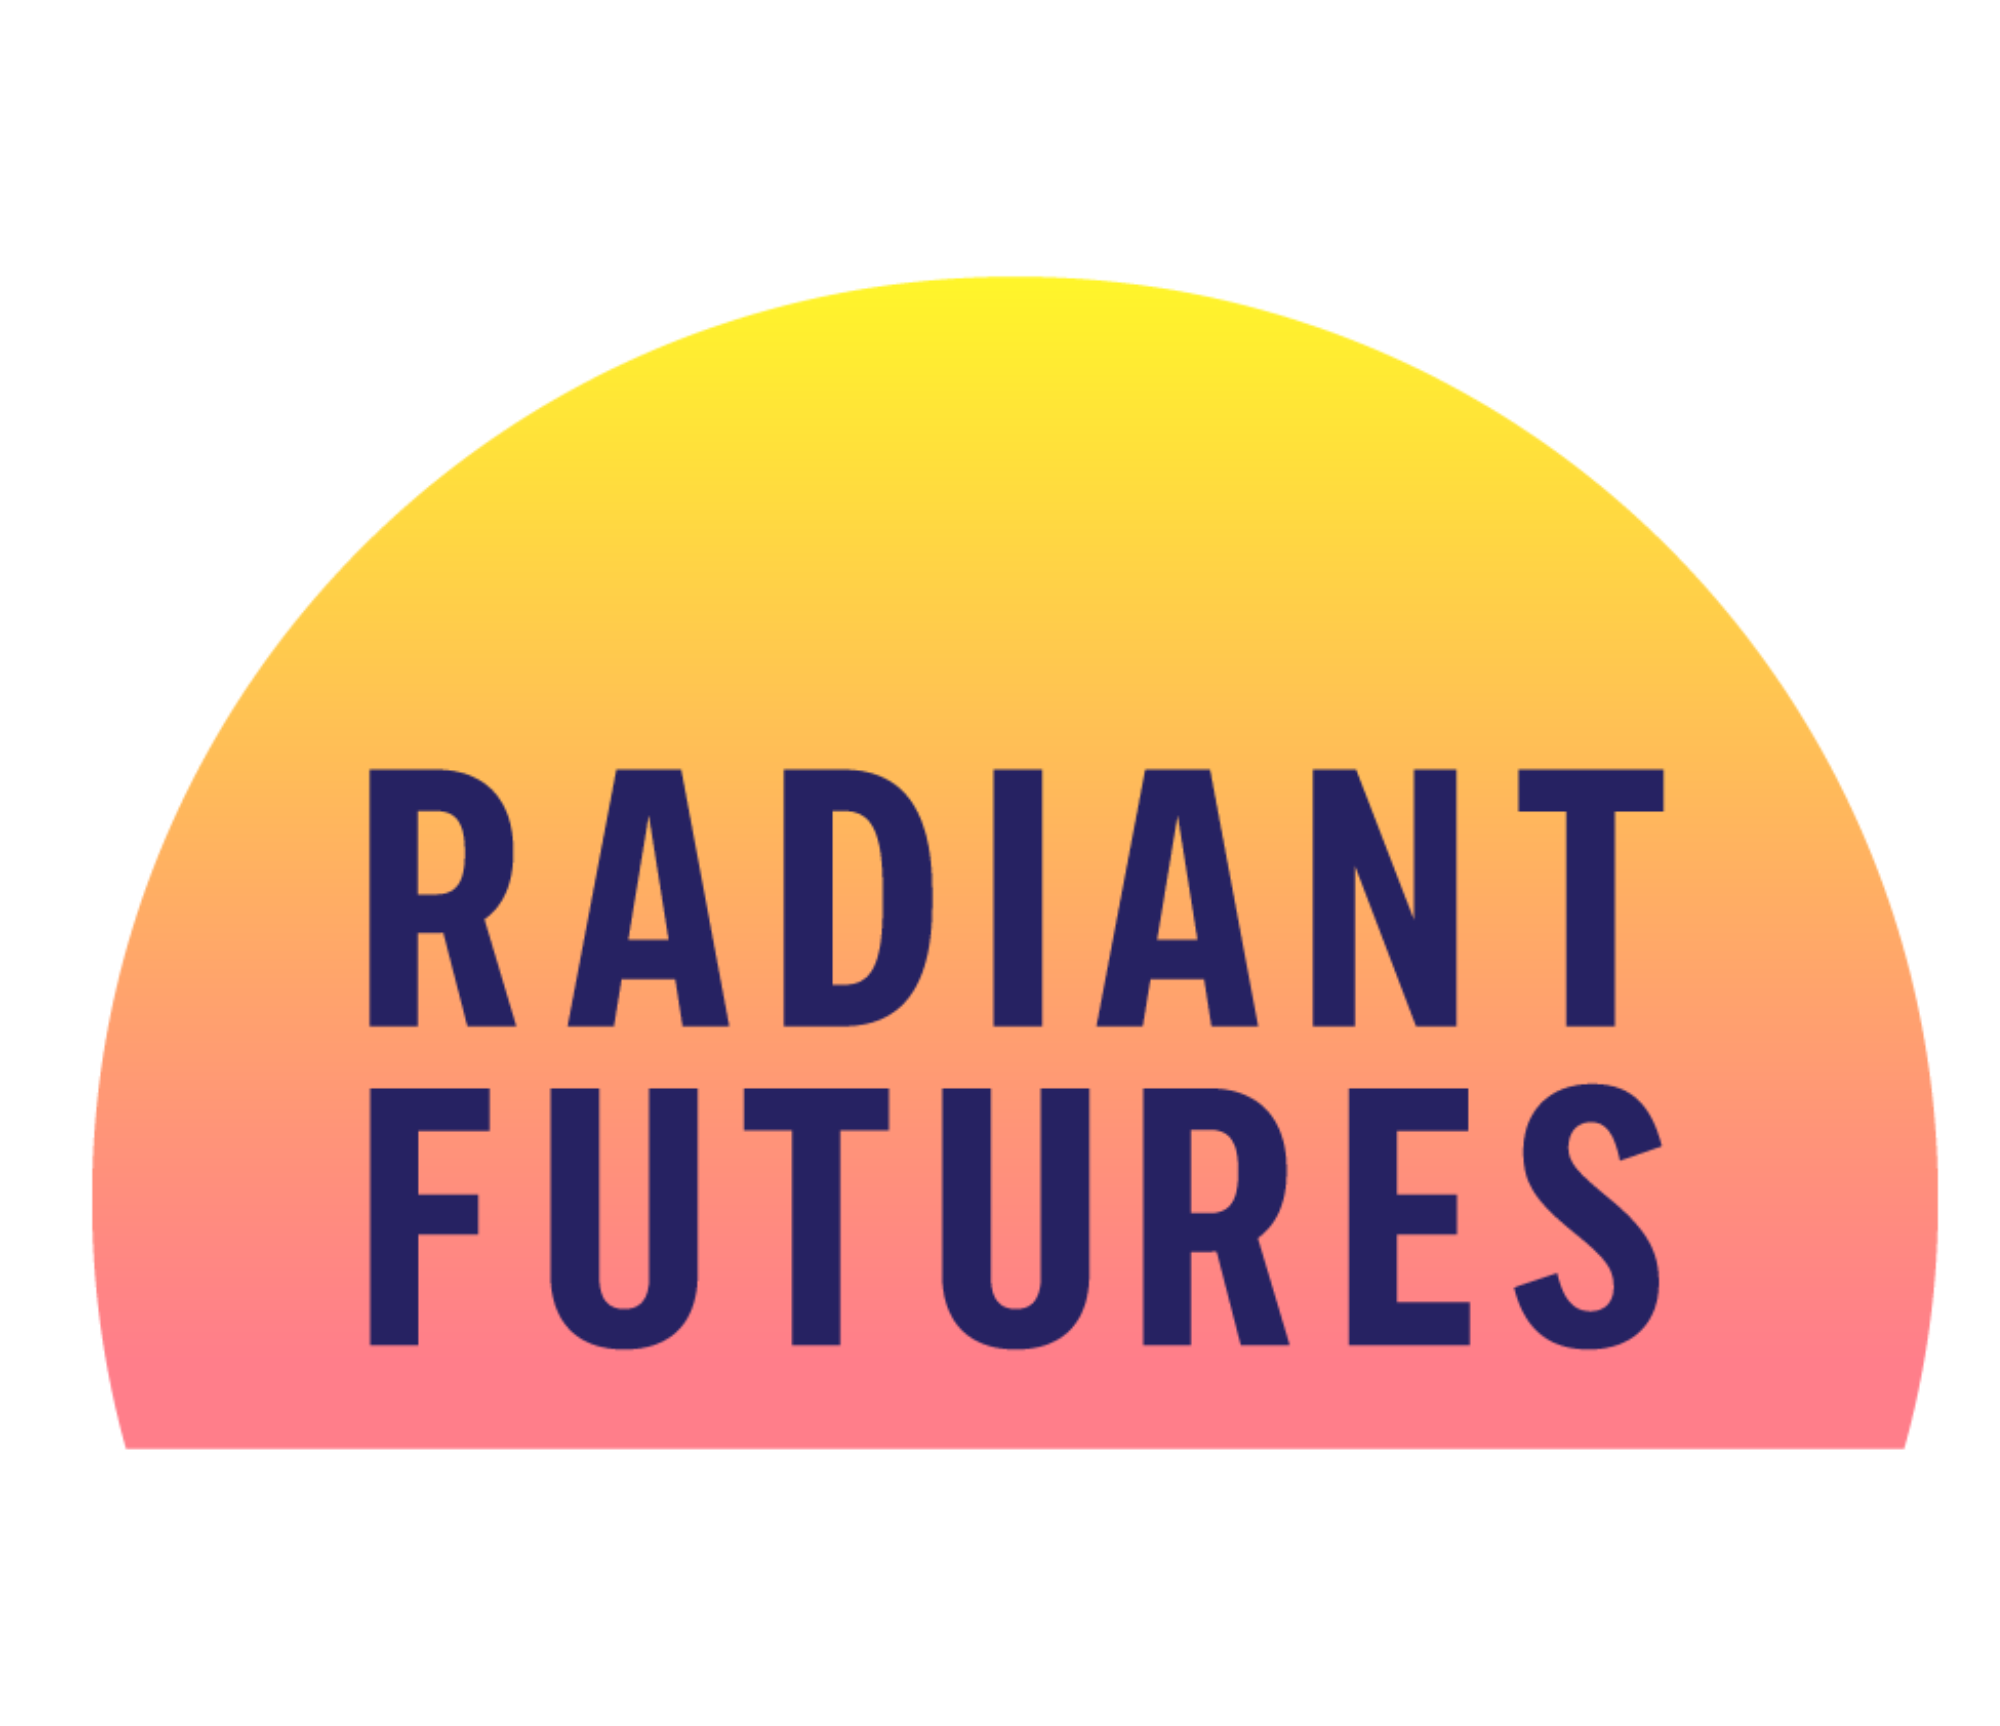 Radiant Futures